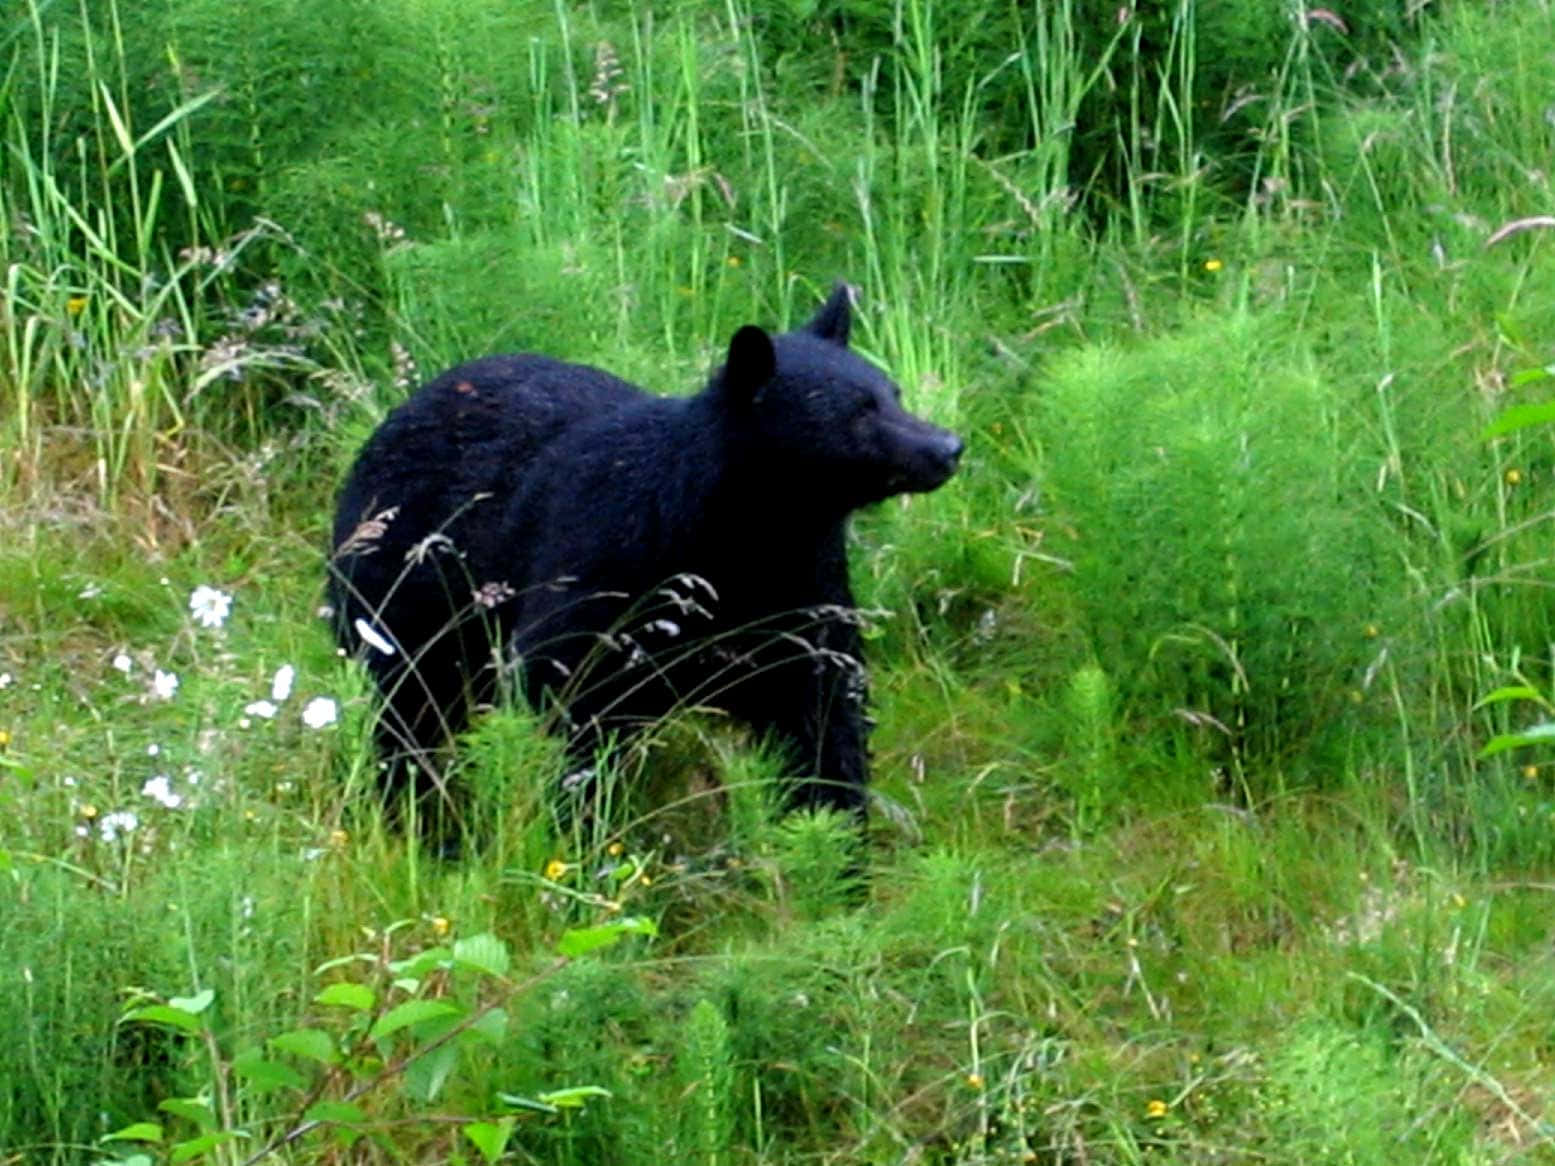 Bildeines Schwarzbären Im Hohen Gras